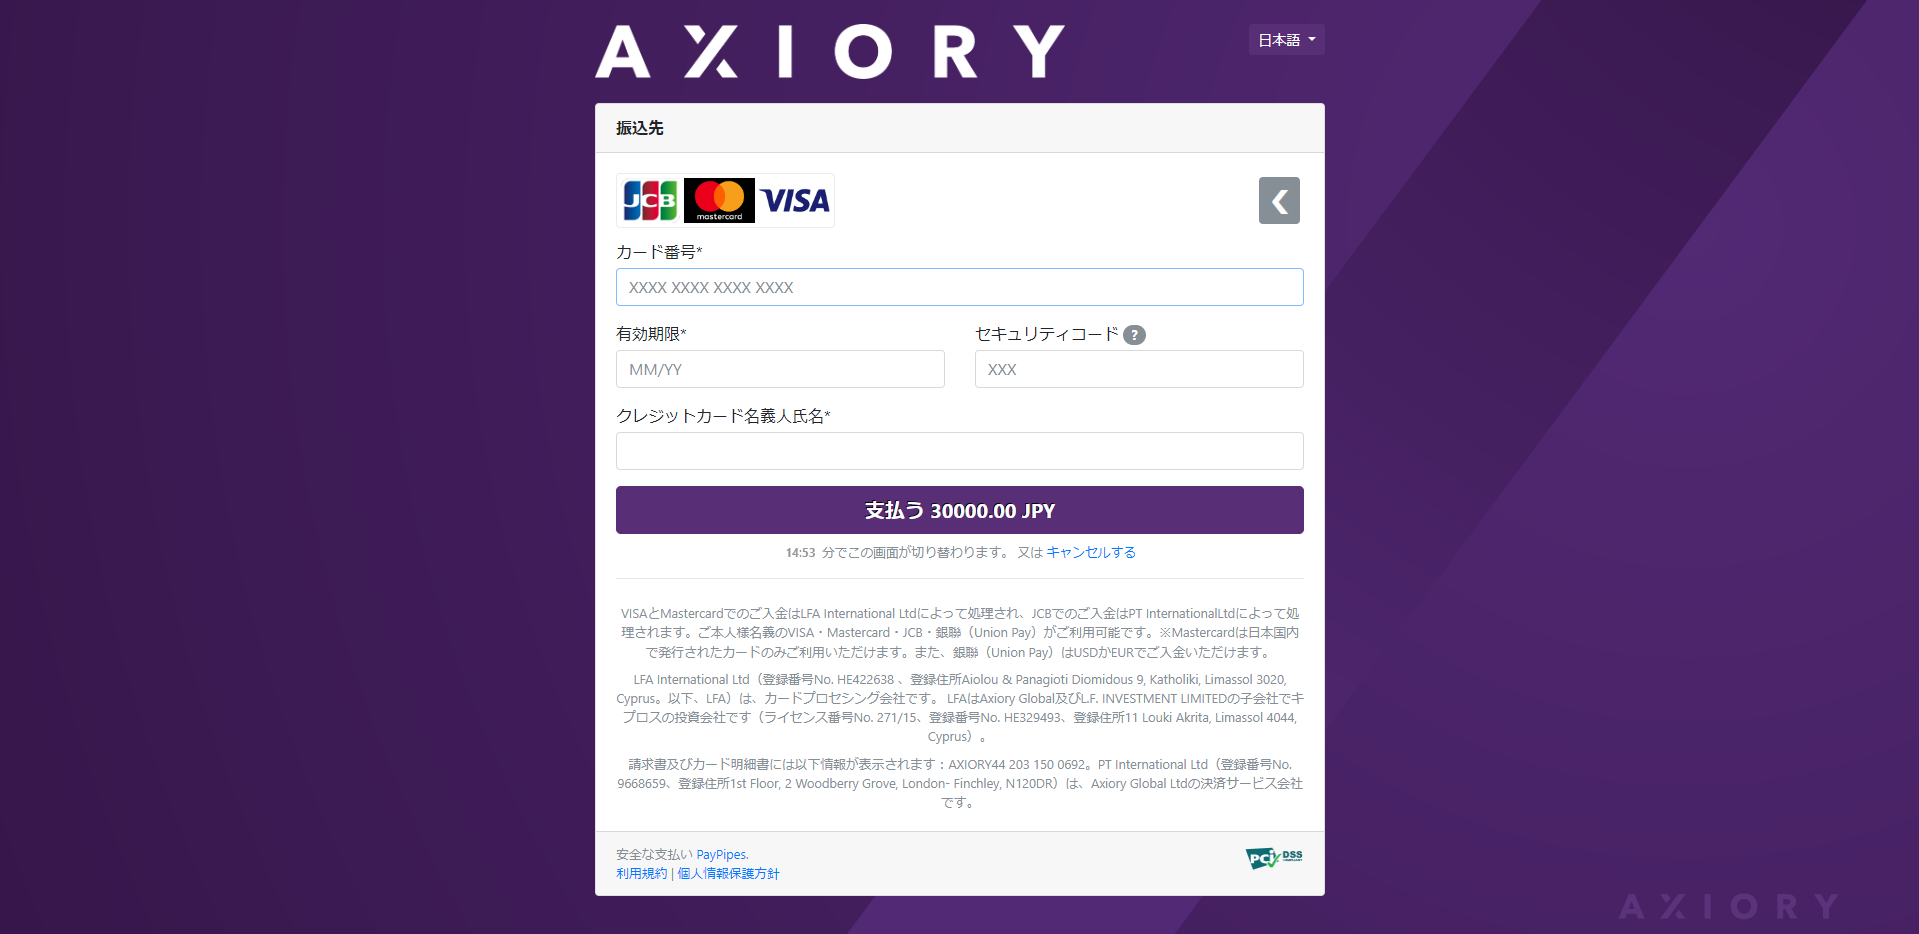 【調査】AXIORY入金【三井住友銀行クレジットカード】と【楽天銀行デビットカード】